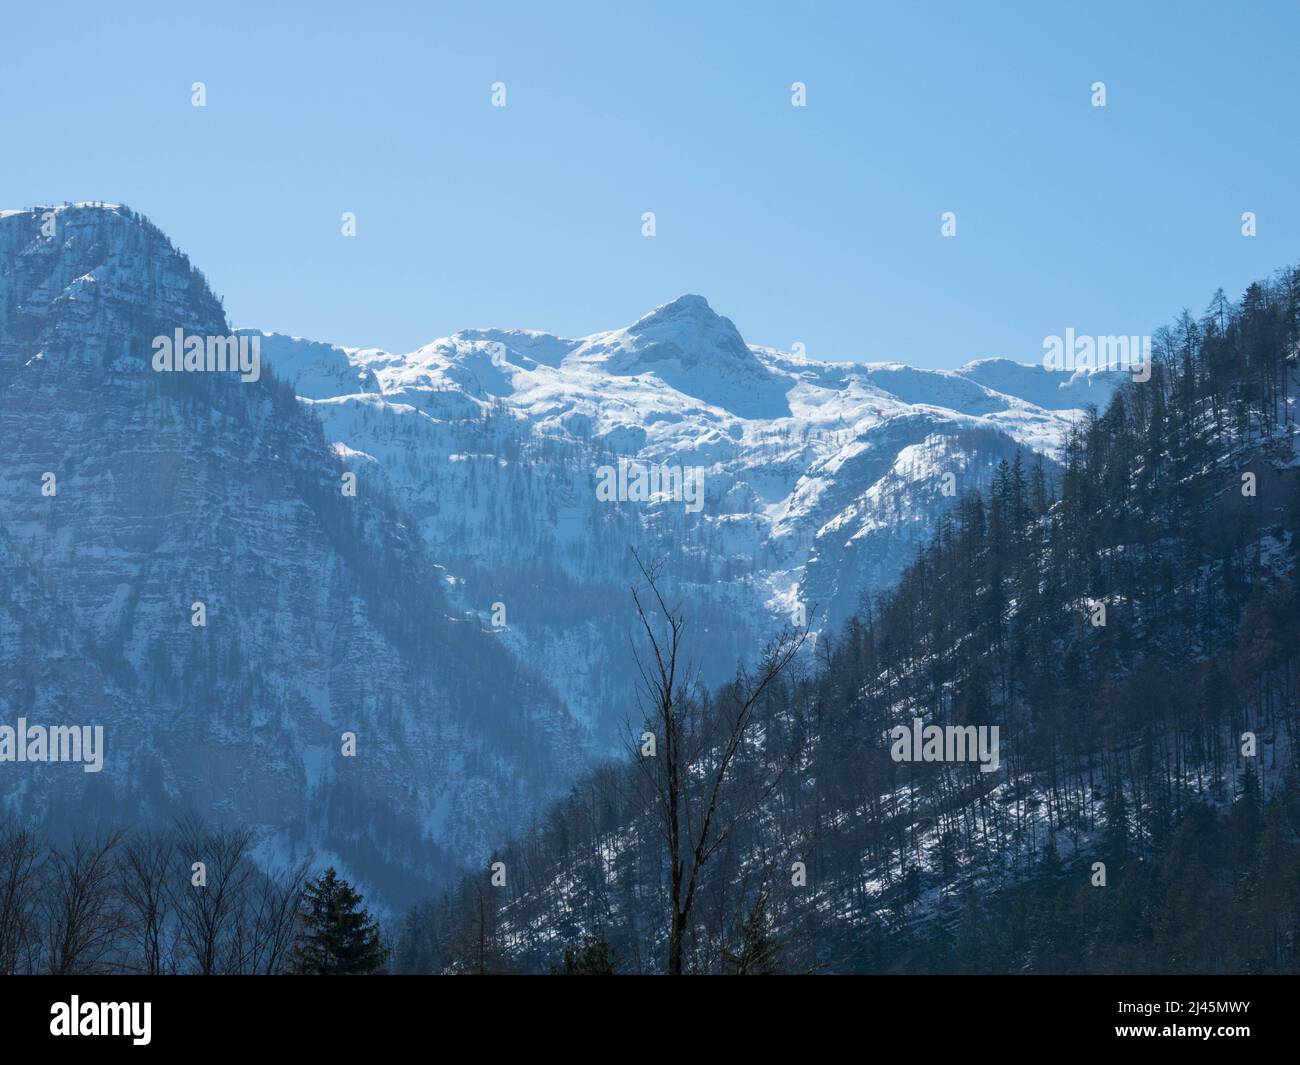 Vue panoramique sur le panorama enneigé des Alpes de Dachstein. Le glacier de Dachstein est la plus haute montagne de la haute-Autriche, en Styrie. Glace éternelle dans Le A. Banque D'Images